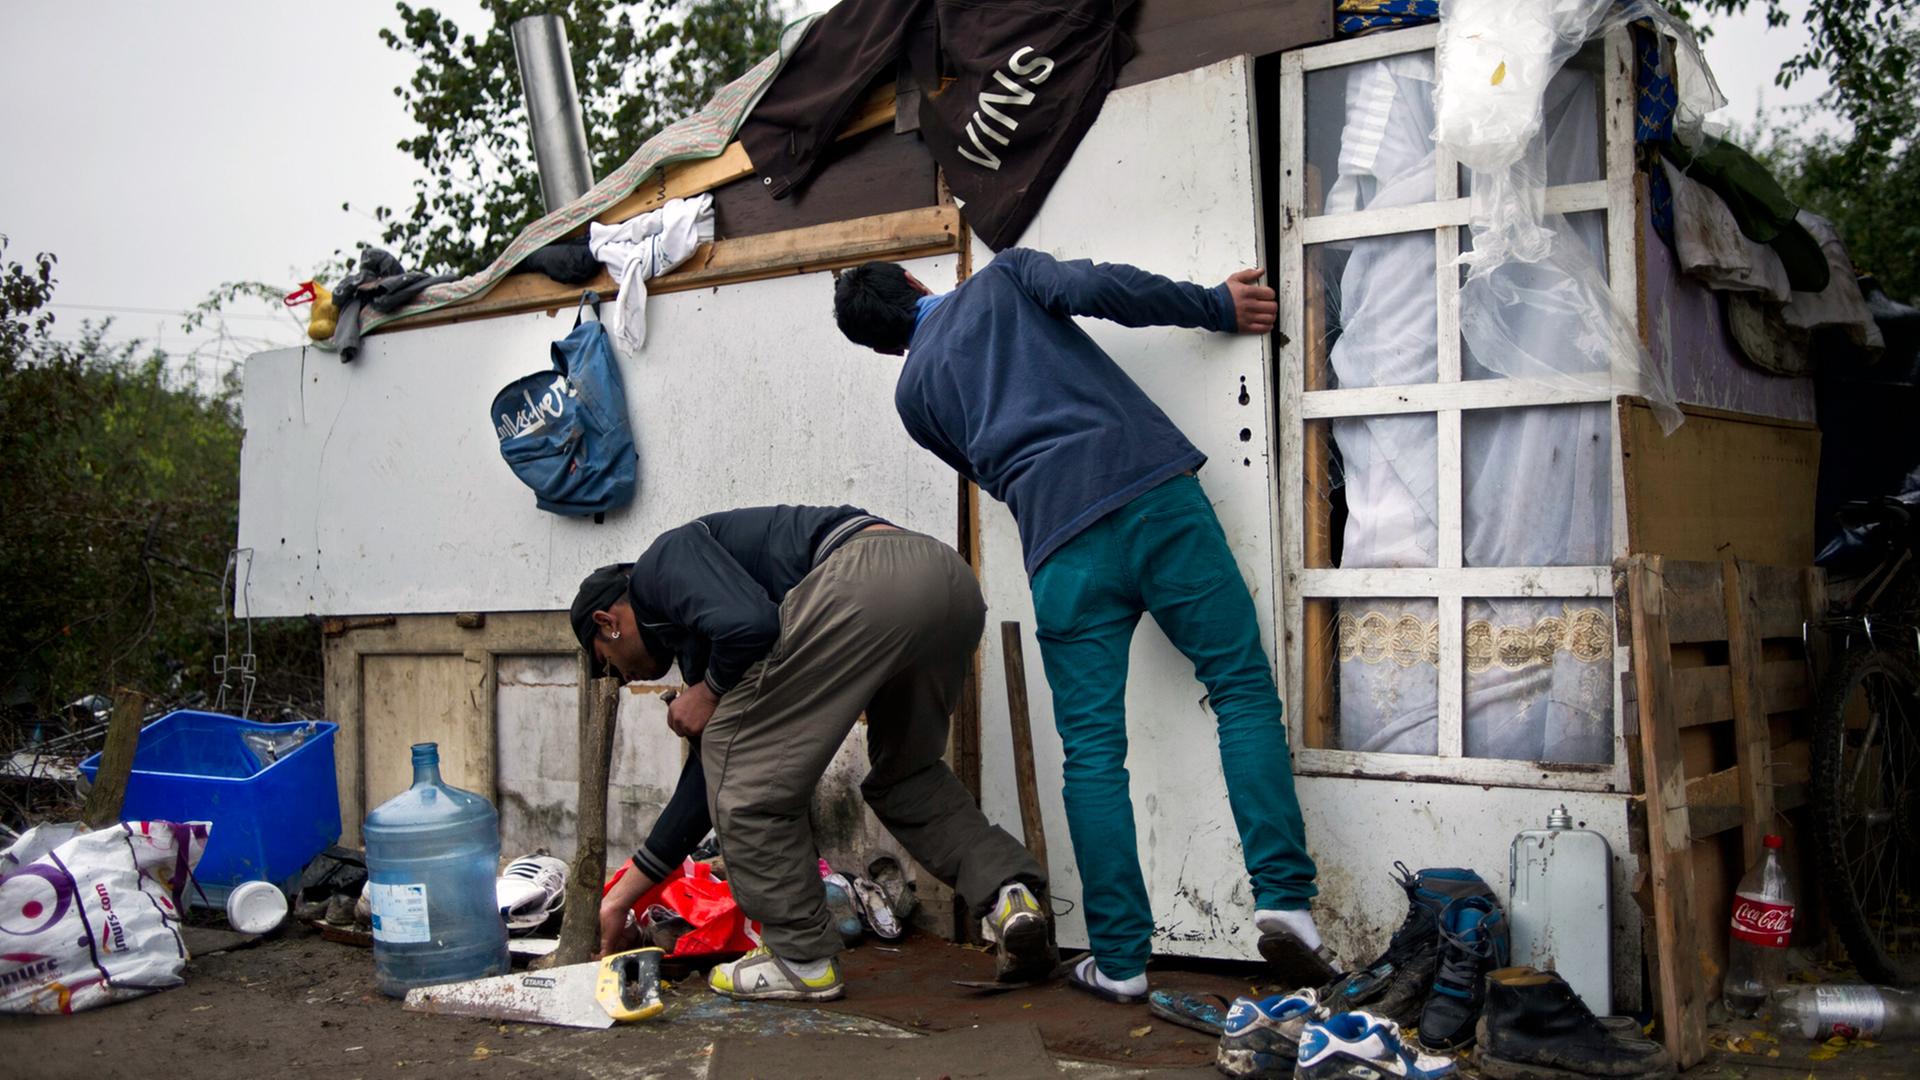 Zwei junge Roma basteln eine Tür für ihre Behelfshütte in einem Lager östlich von Paris im Oktober 2012.